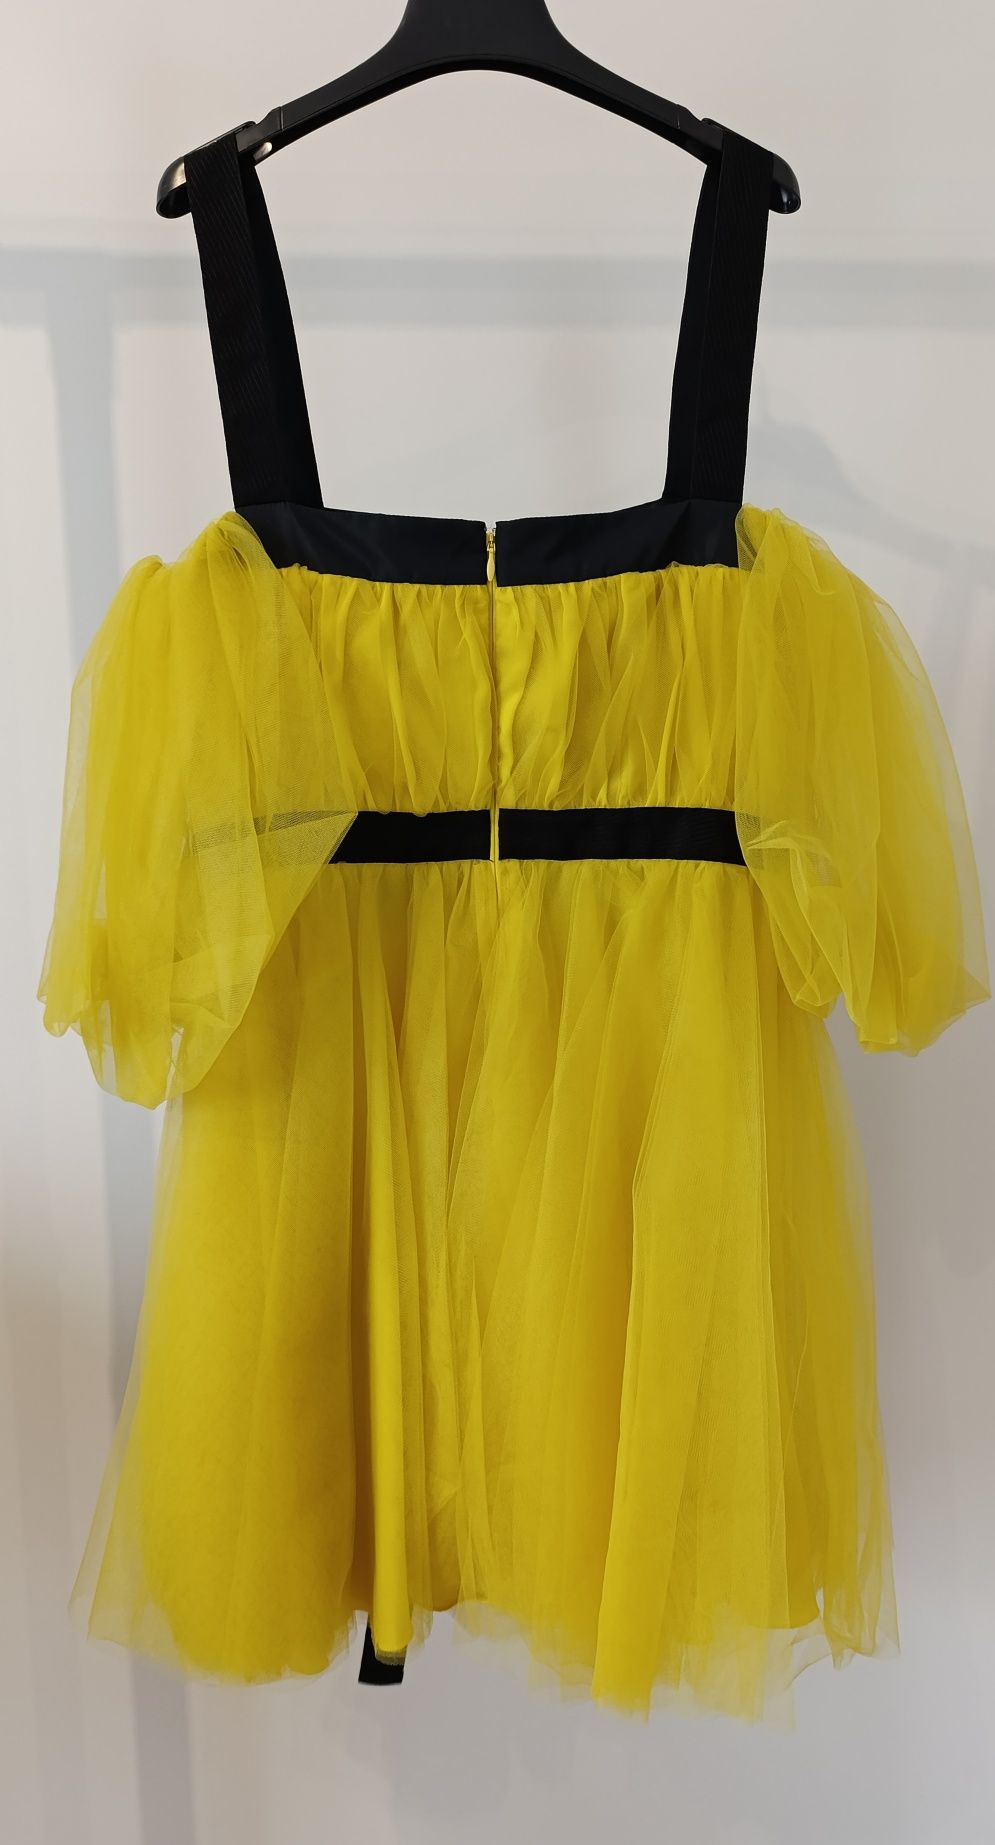 Pinko nowa sukienka żółta czarna tiulowa wyjątkowa M